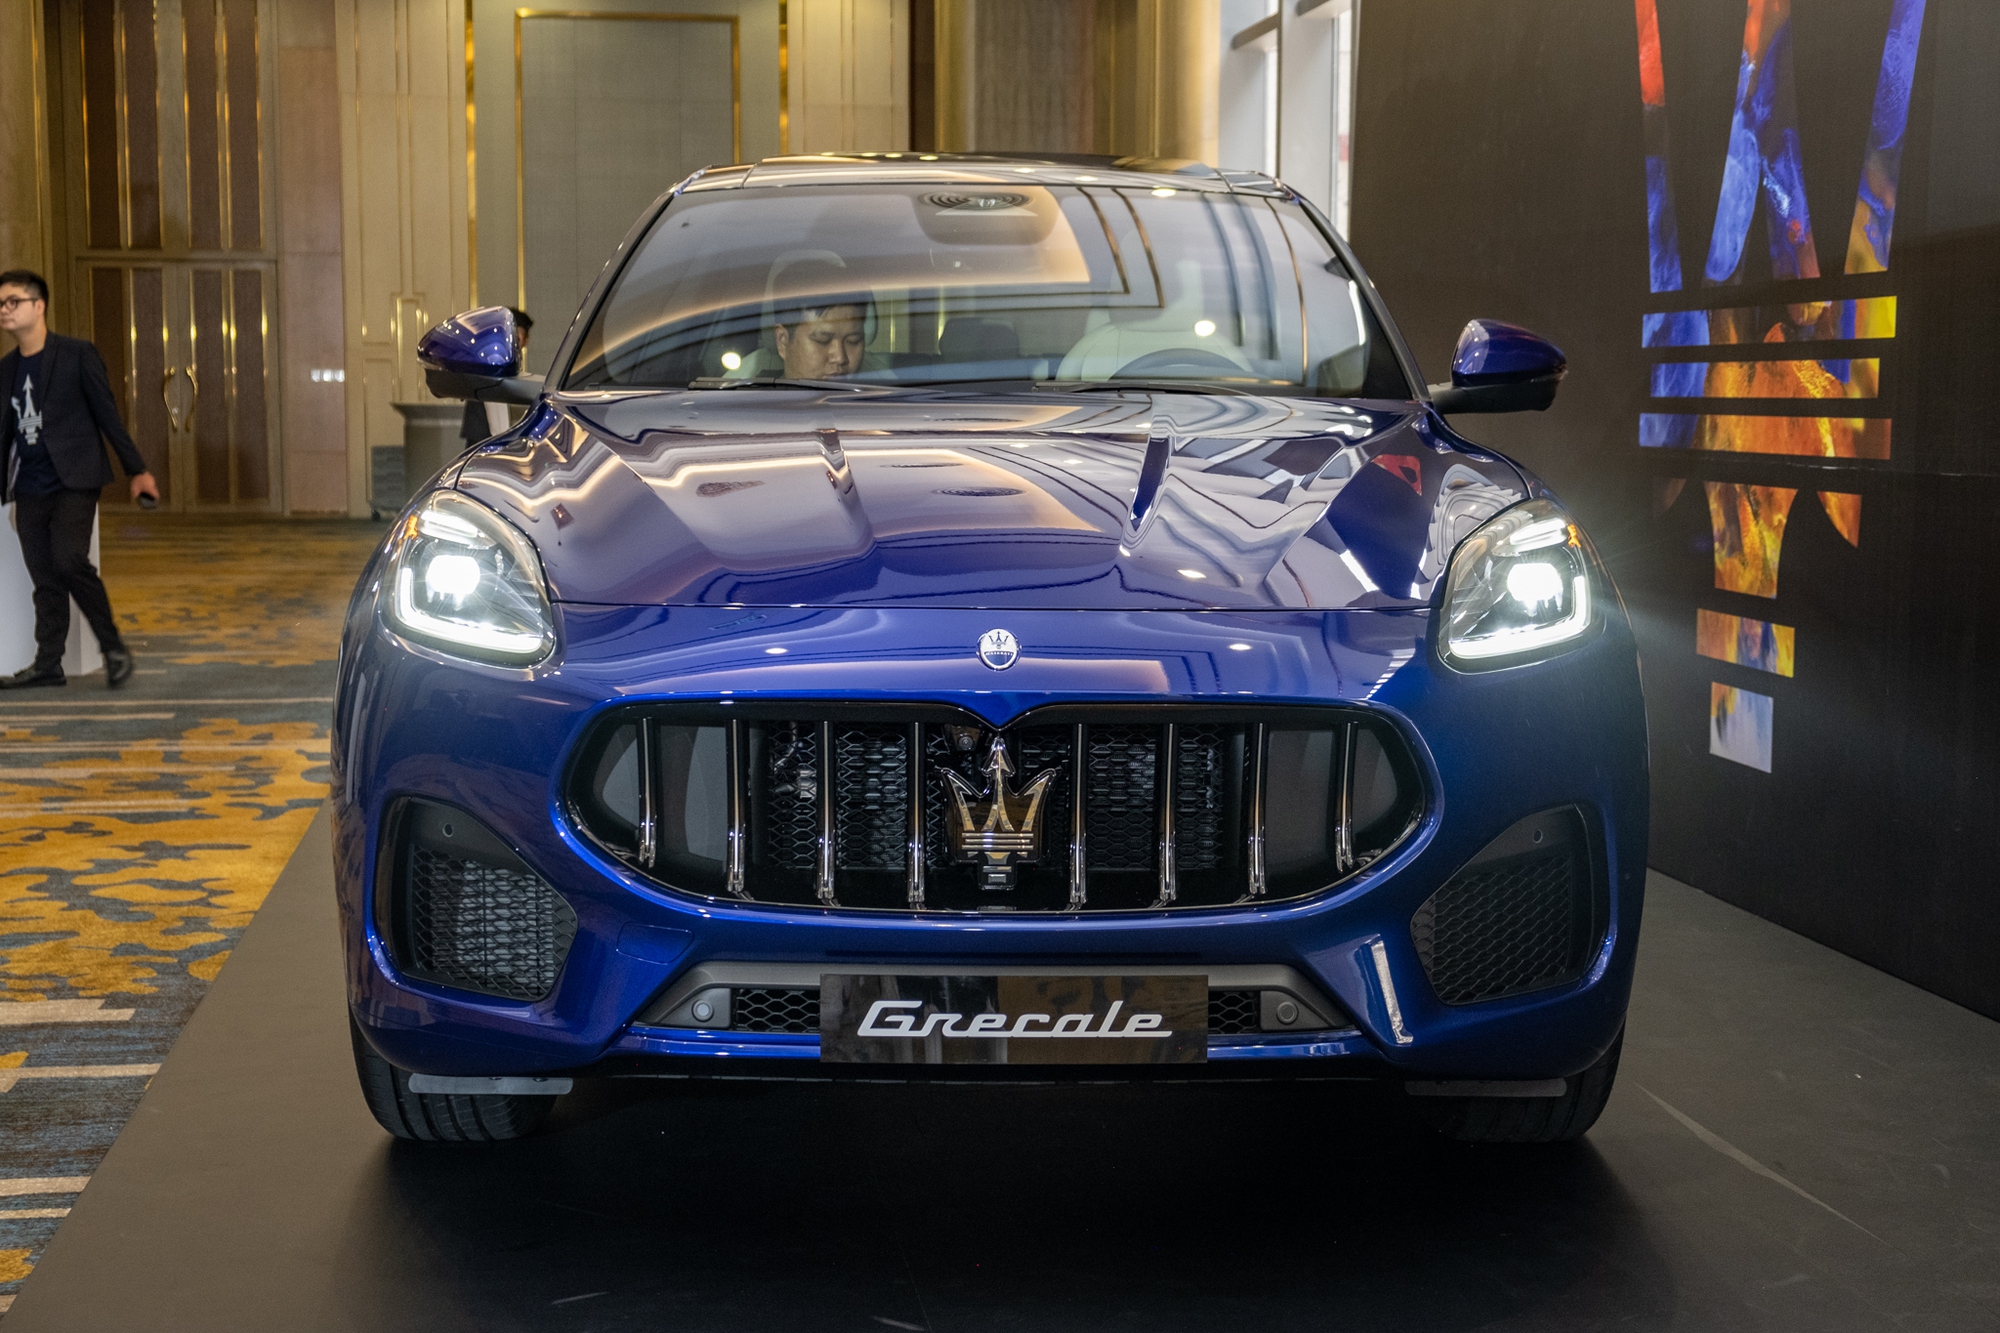 Chi tiết Maserati Grecale giá từ 4,2 tỷ đồng tại Việt Nam, lách khe cửa hẹp giữa Porsche Macan và Cayenne - Ảnh 2.